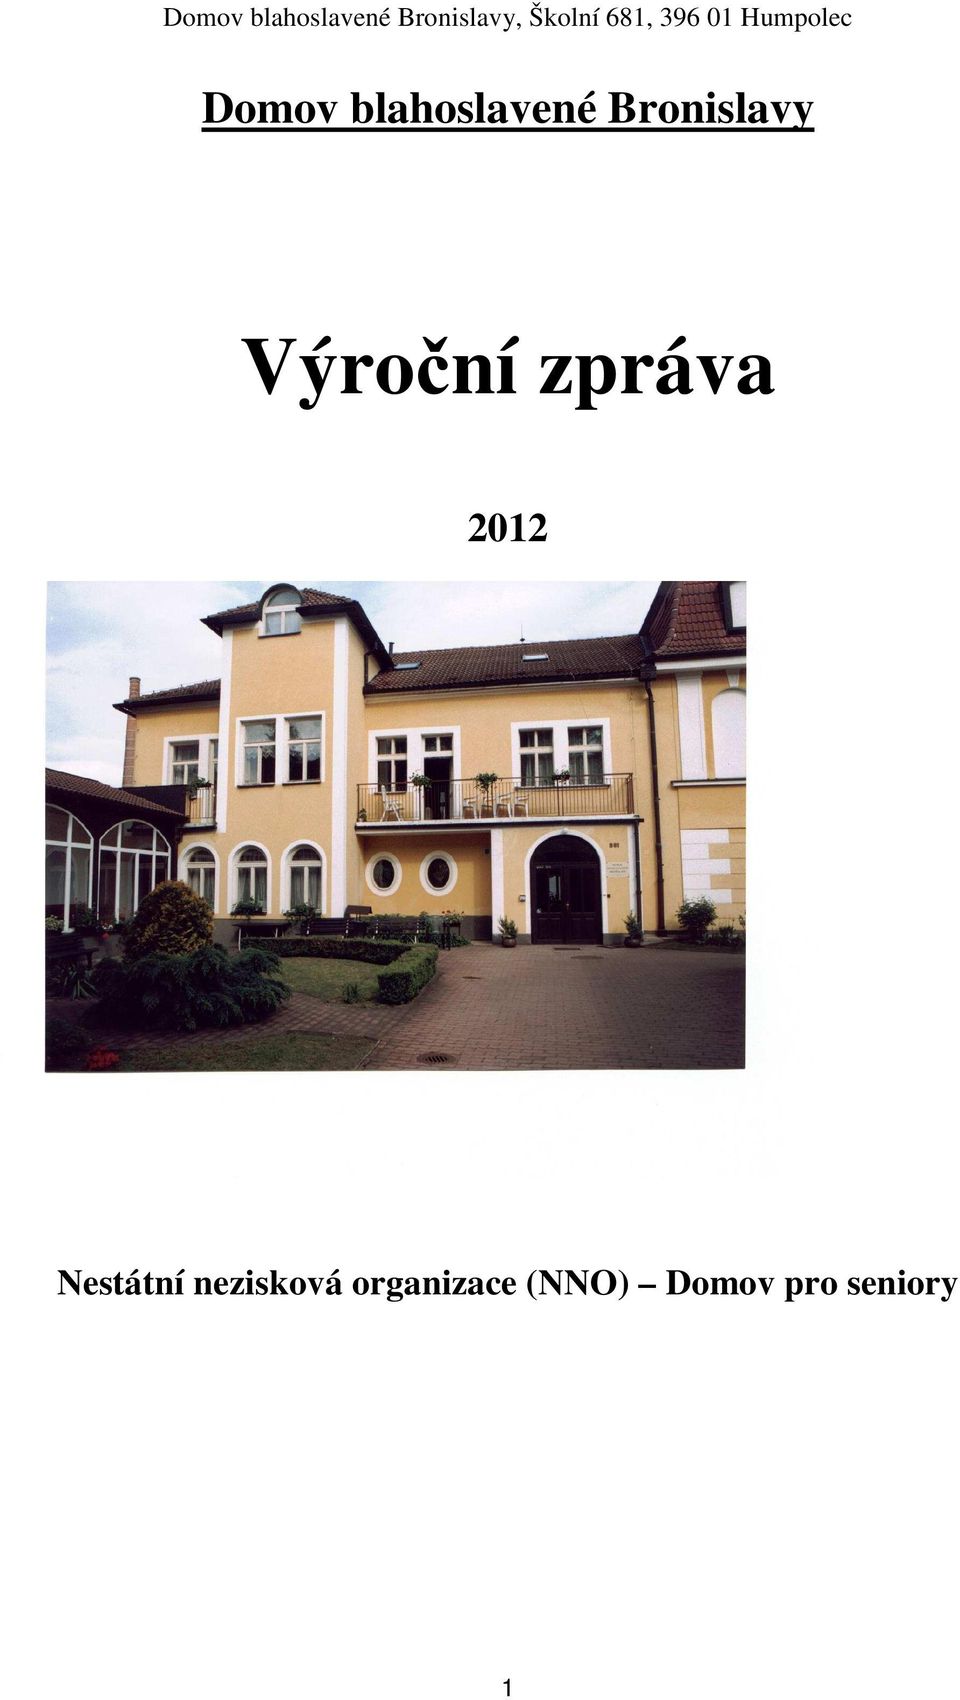 2012 Nestátní nezisková